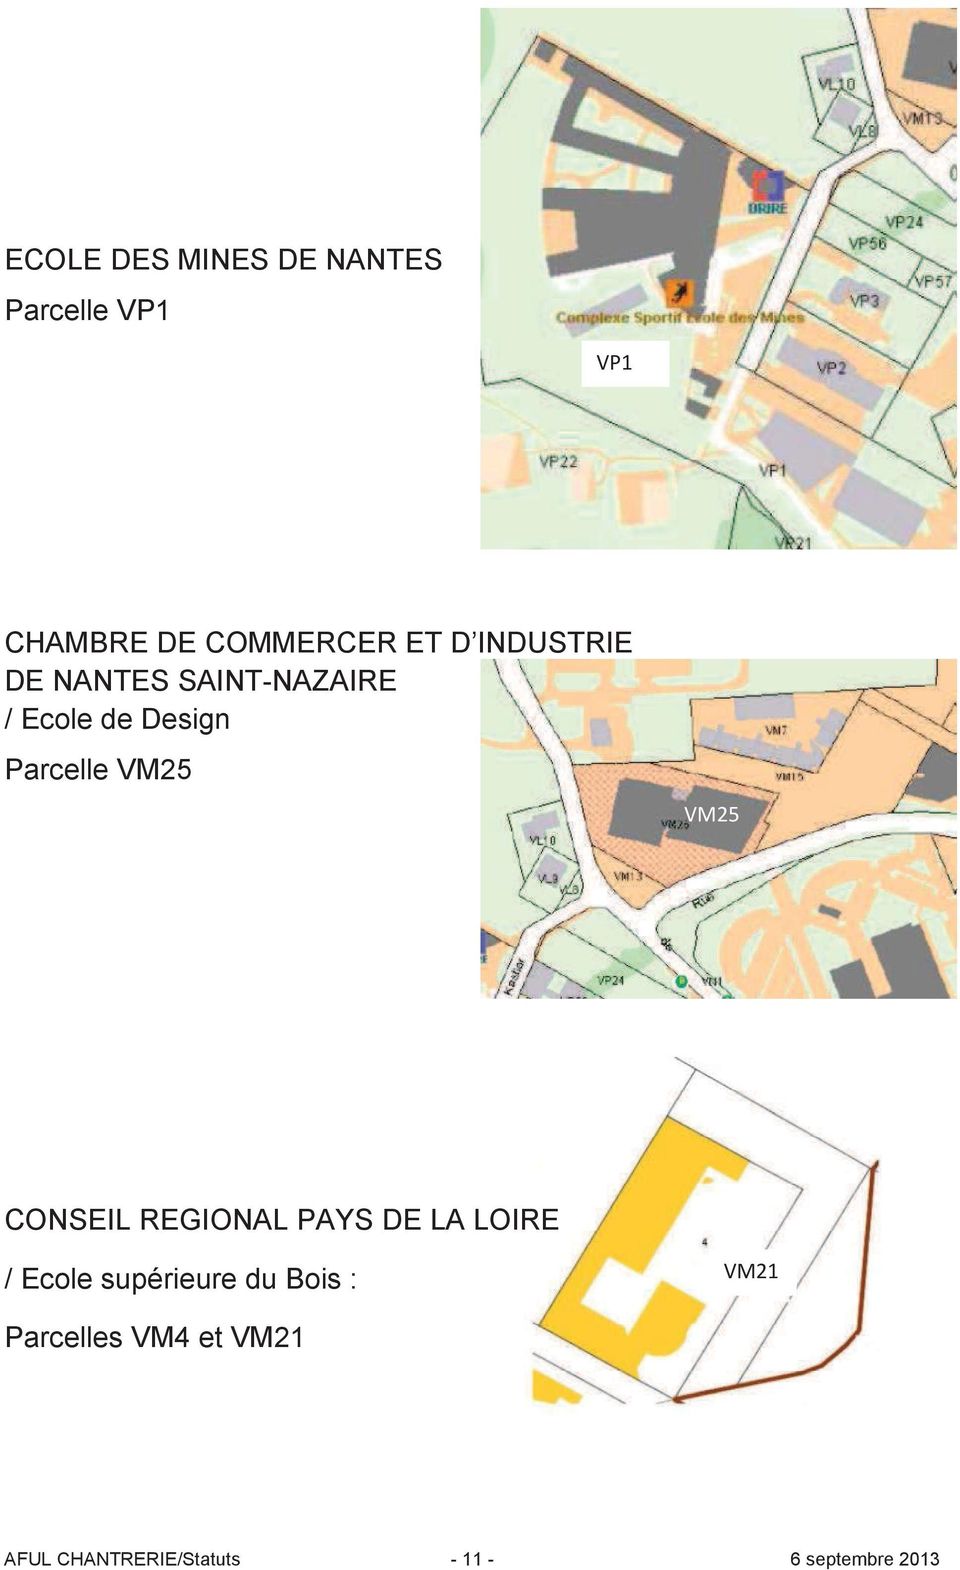 CONSEIL REGIONAL PAYS DE LA LOIRE / Ecole supérieure du Bois :